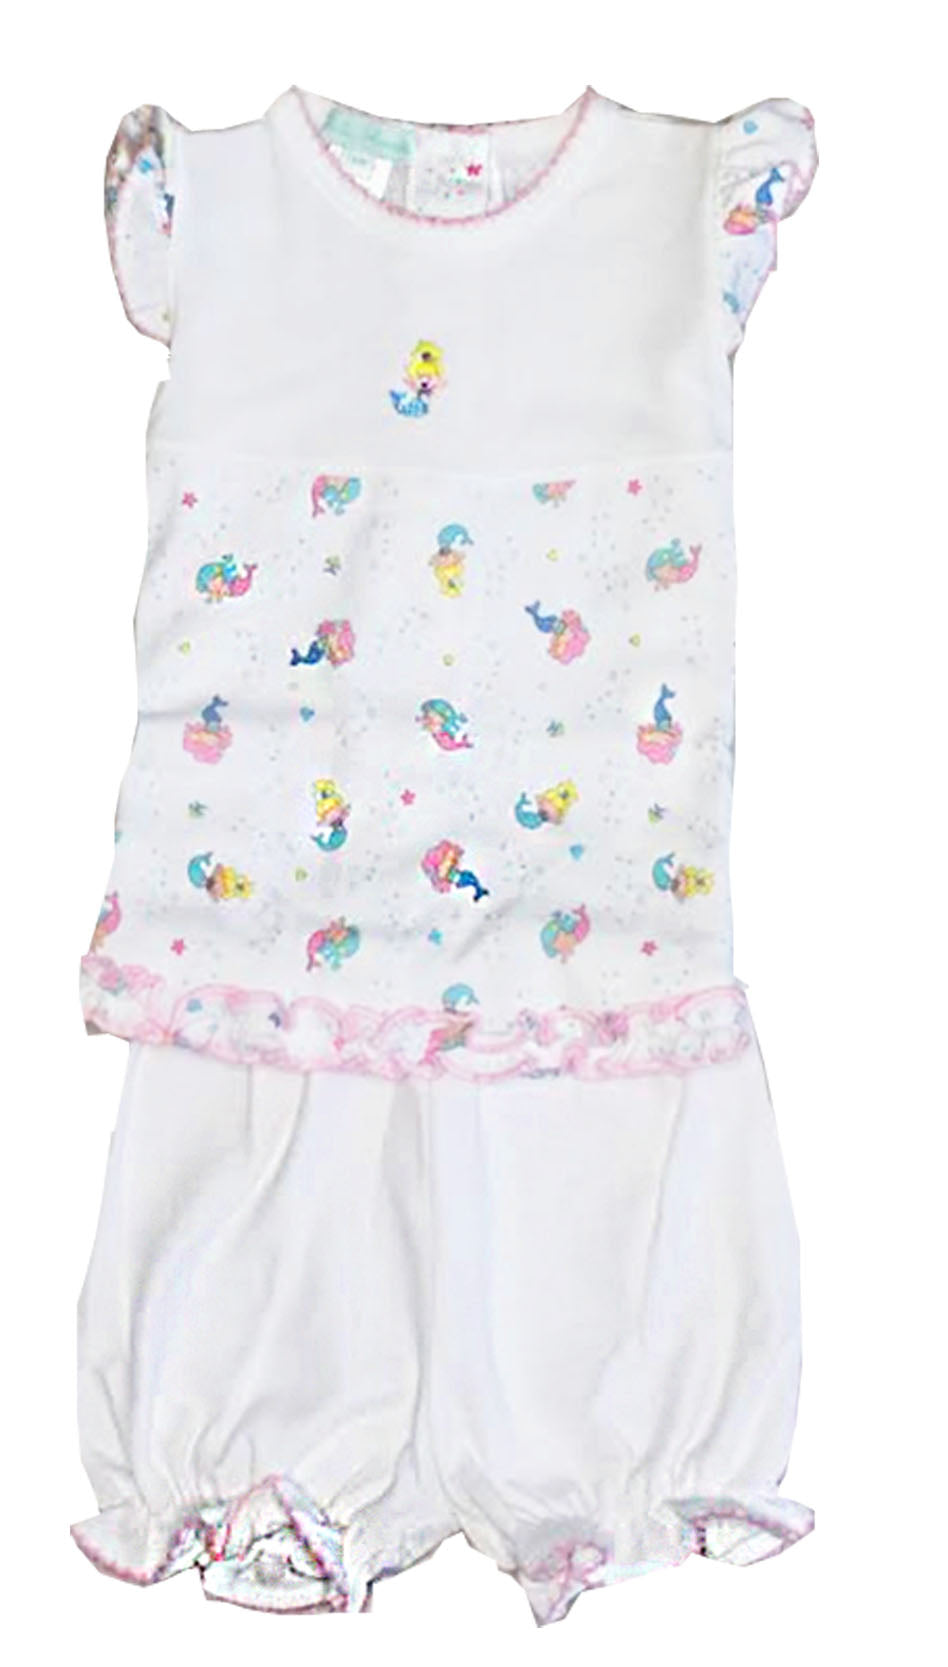 Baby Girl's Mermaid Dress Set - Little Threads Inc. Children's Clothing